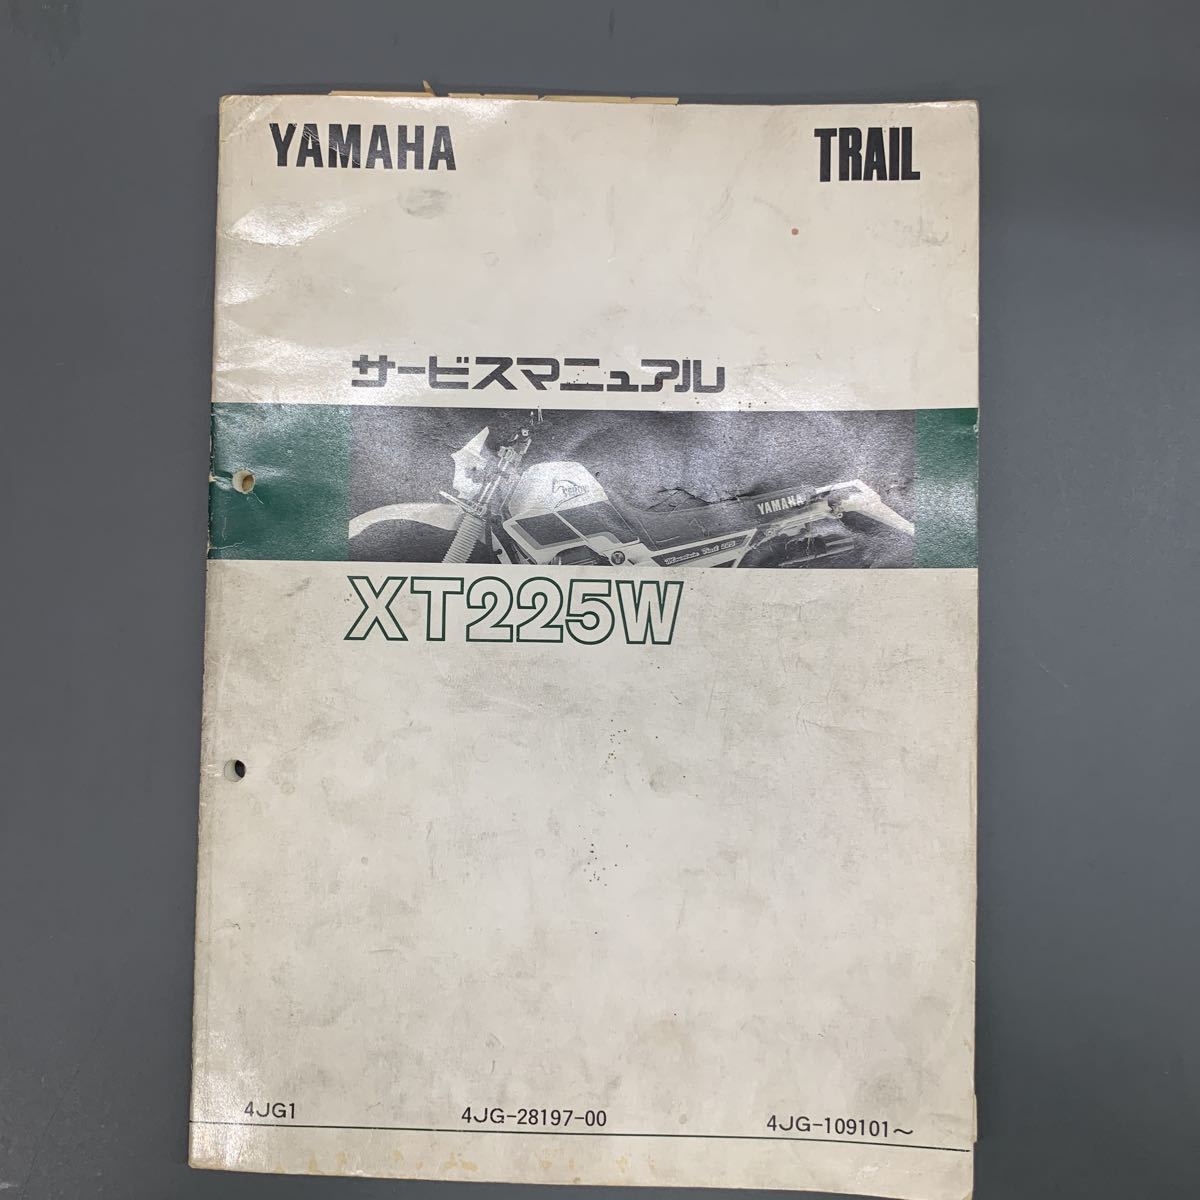 # бесплатная доставка # YAMAHA Yamaha руководство по обслуживанию XT225W 4JG TRAIL Serow Yamaha двигатель акционерное общество #